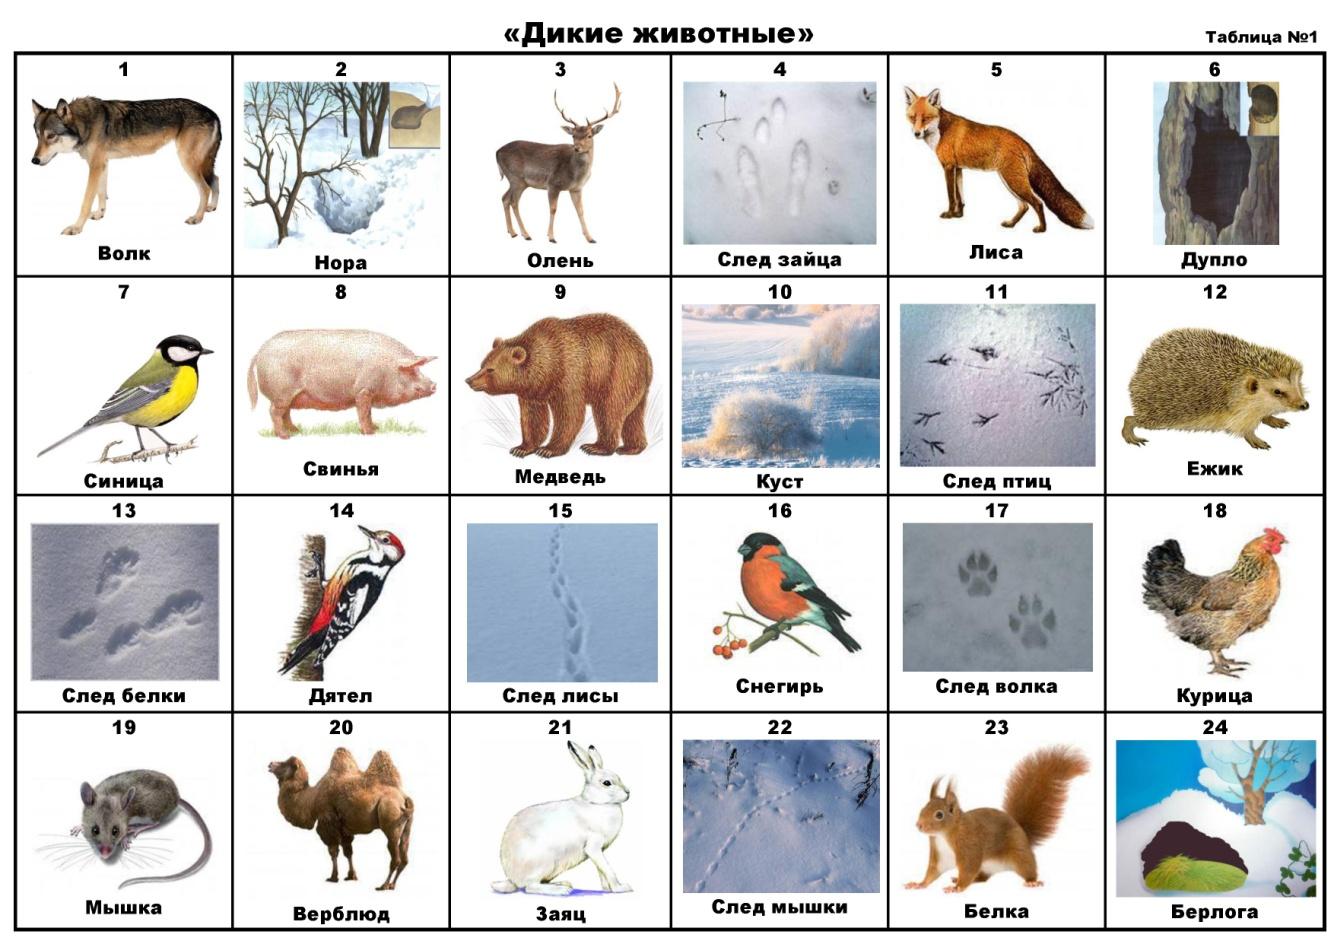 Дикие животные картинки для детей с названиями